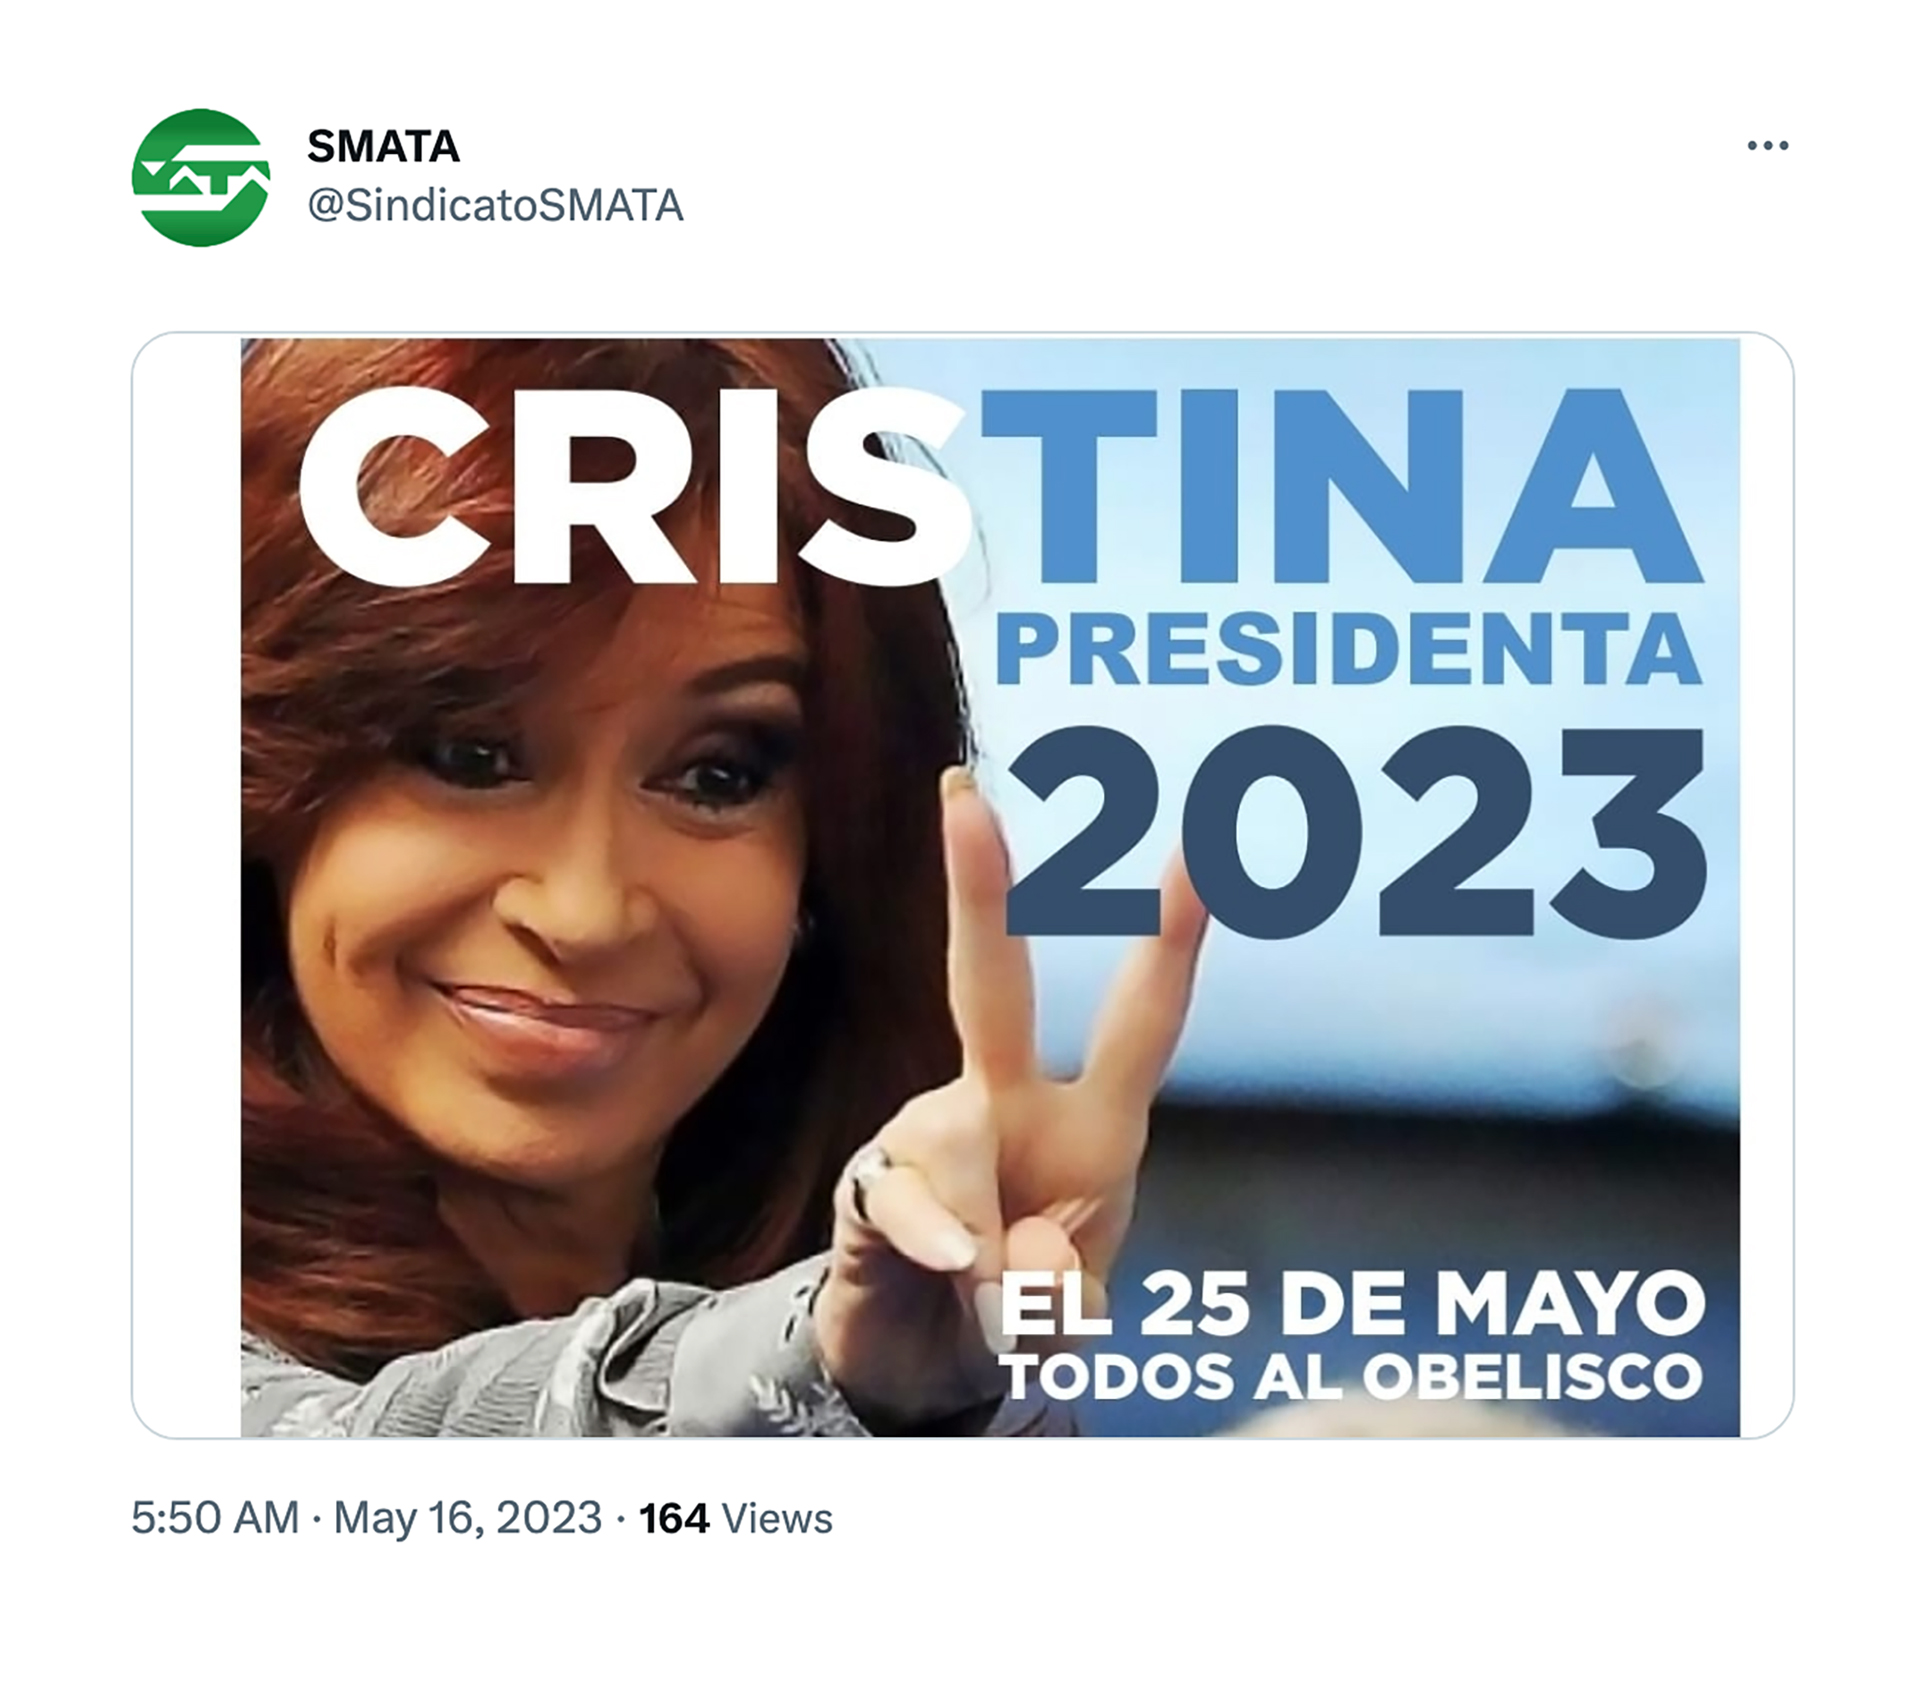 La última publicación de SMATA, invitando al acto del 25 de mayo en donde piden por la candidatura de Cristina Kirchner